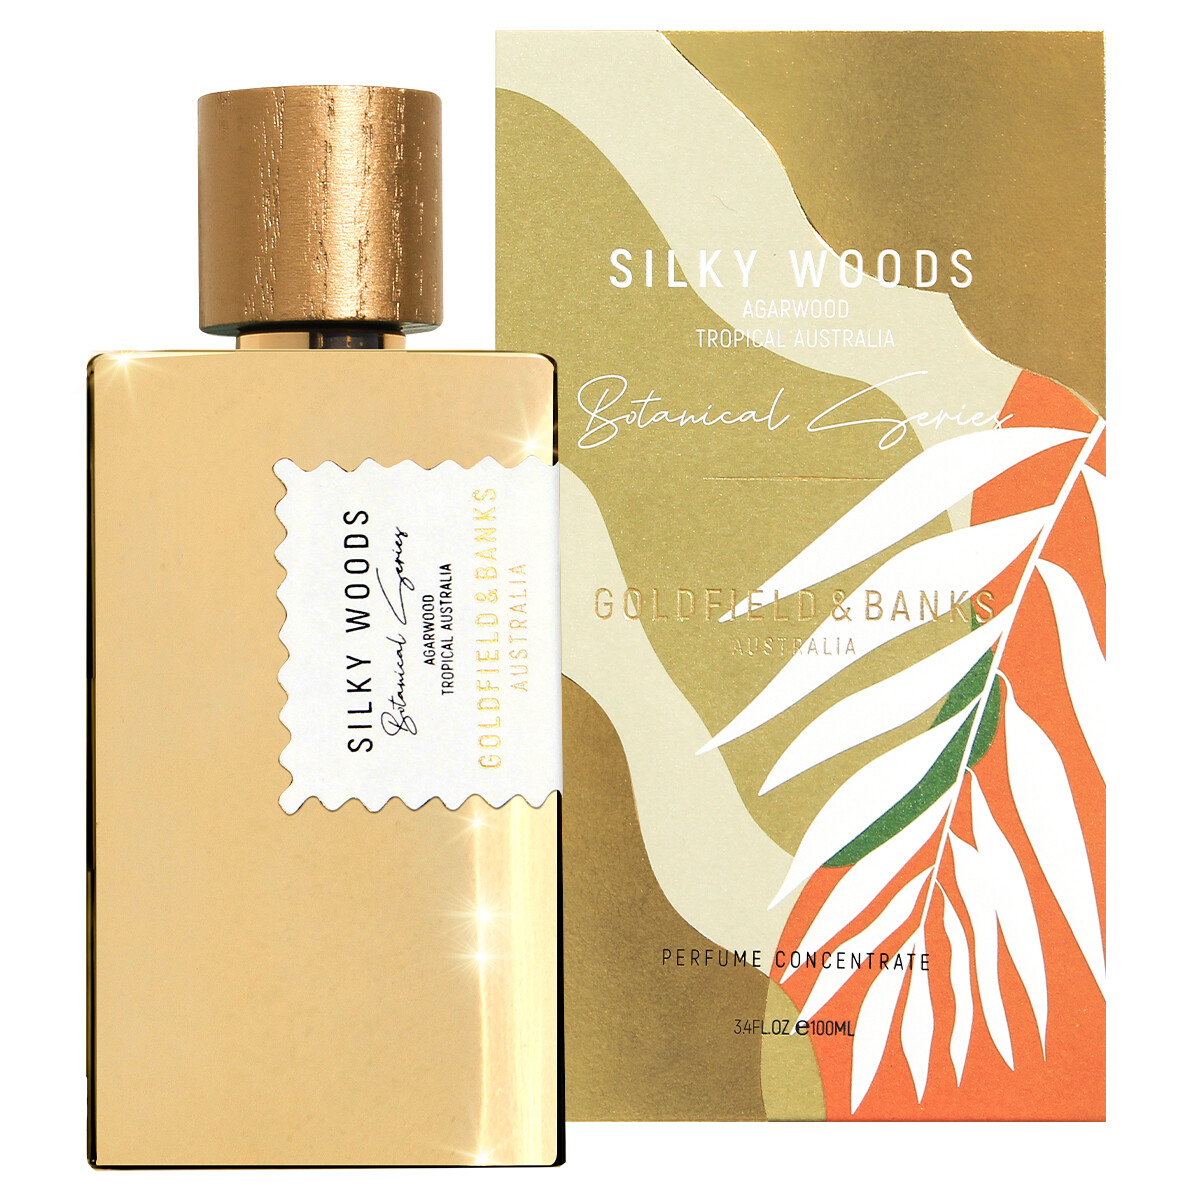 Luxus Parfum Goldfield und Banks Silky Woods Parfum 100ml bestellen